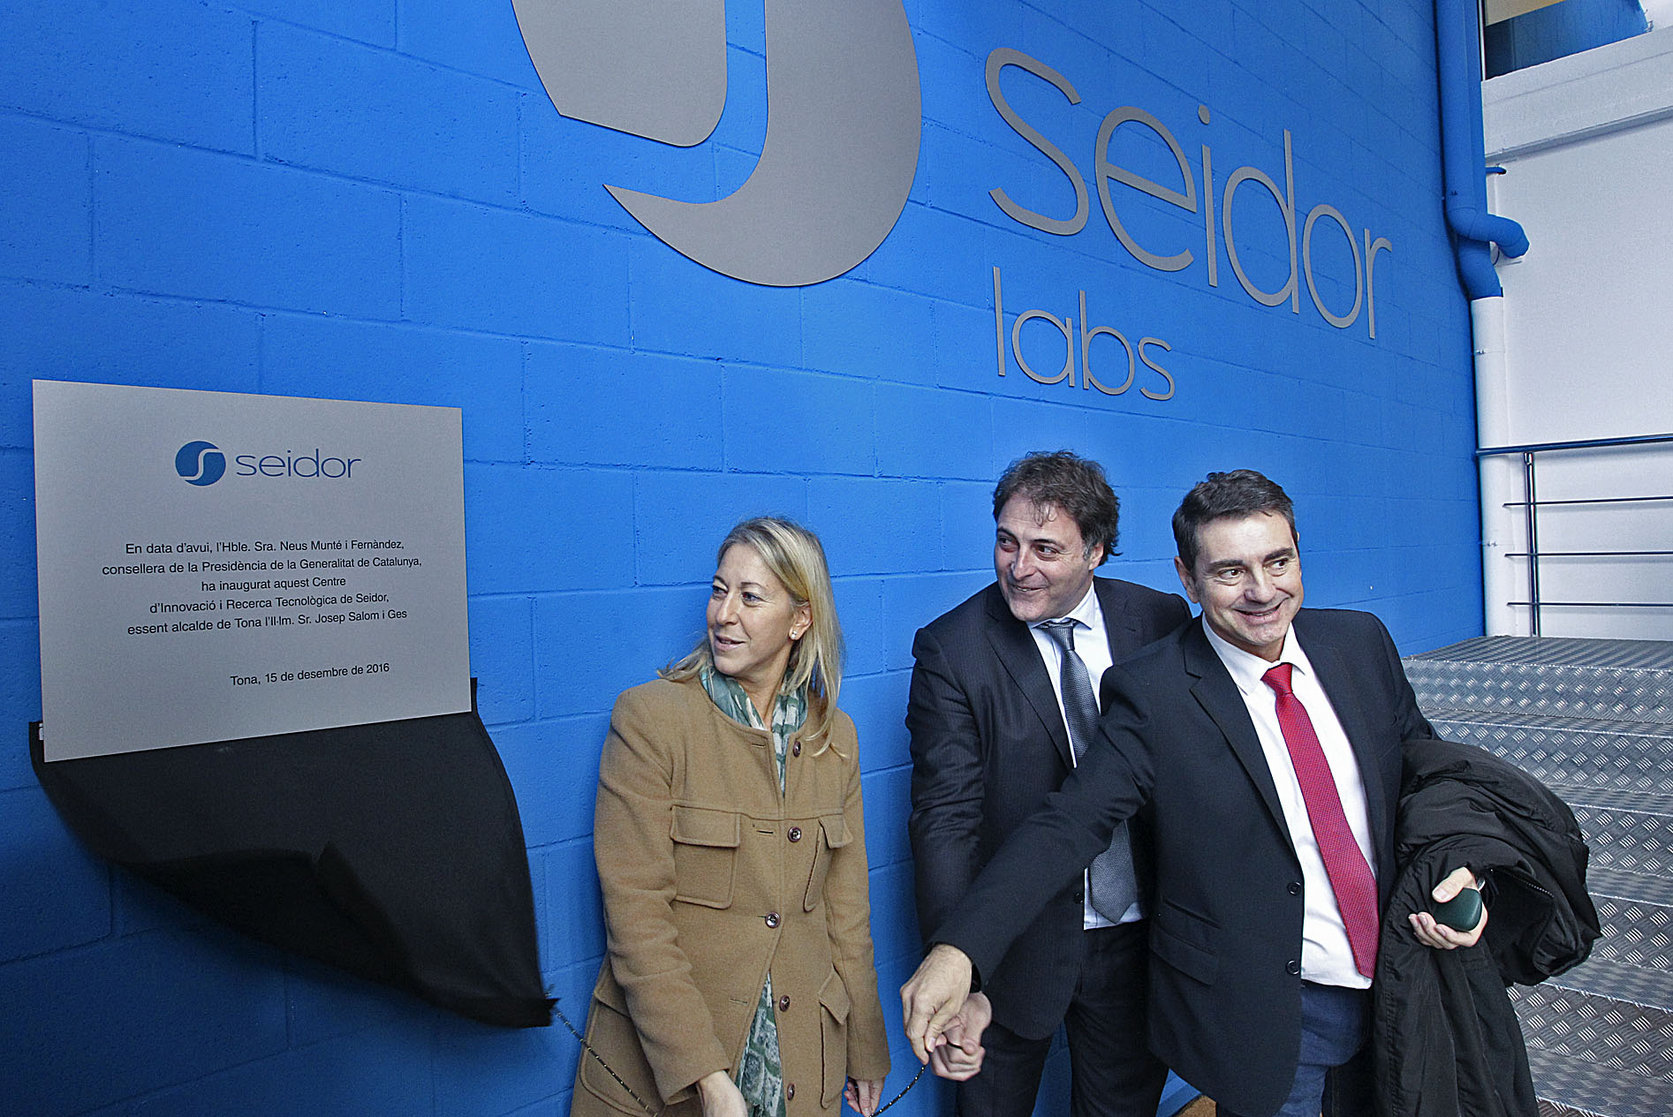 Josep Benito, CEO de Seidor, el dia que es va inaugurar el Seidor Lab a Tona entre l'exconsellera Neus Munté i l'alcalde de Tona Josep Salom